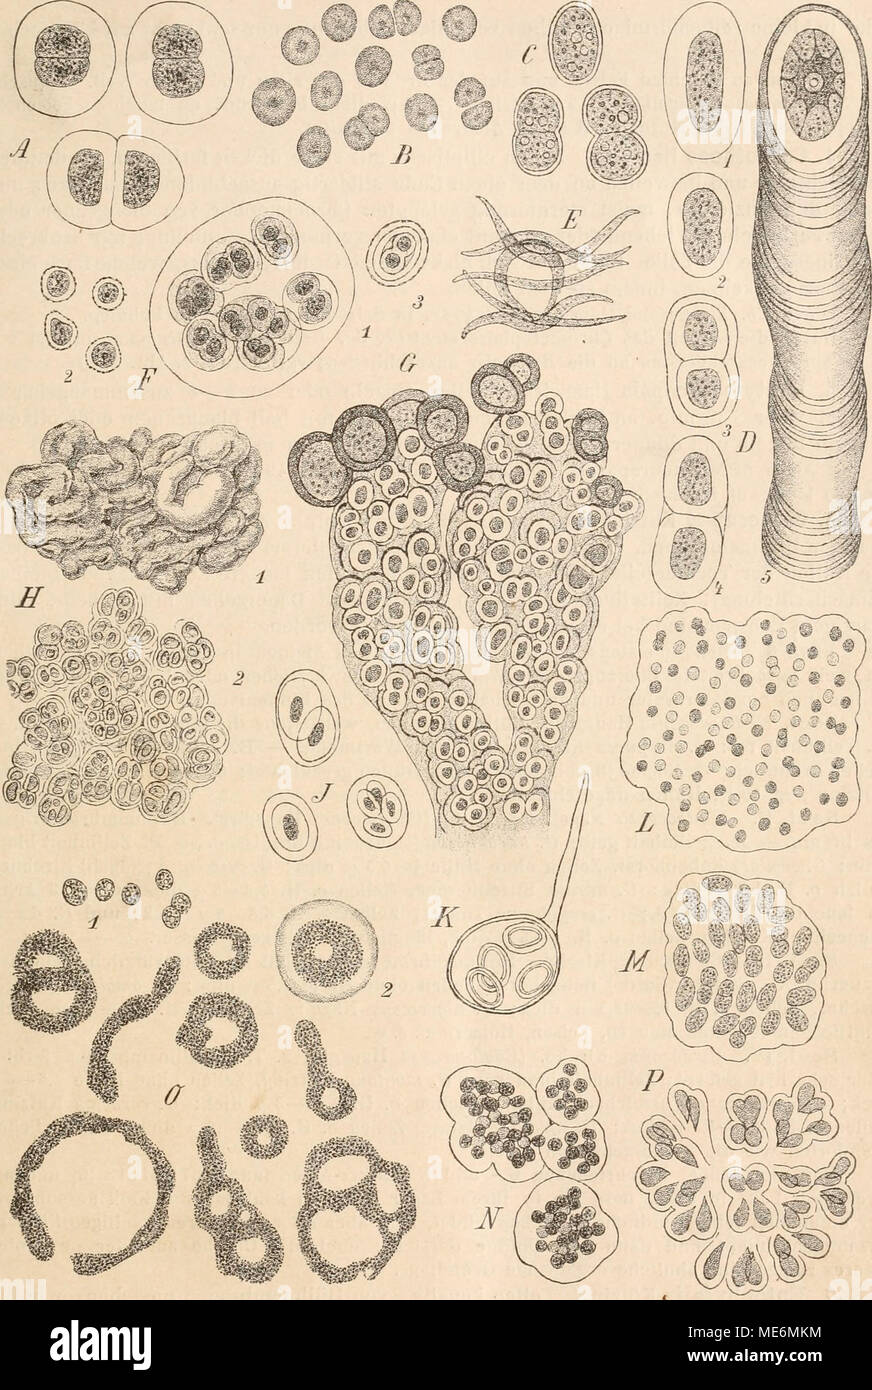 . Die Natürlichen Pflanzenfamilien nebst ihren Gattungen und wichtigeren Arten, insbesondere den Nutzpflanzen, unter Mitwirkung zahlreicher hervorragender Fachgelehrten begründet . Fig. 49. A Chroococcus turgidlis Näg. (575|1). — B Synechocystis aquatilis Sauv. (1000/1). — C Syuechococcns airu- ginosus Näg. (575/1). — D C'hrootlicce RichterianaH.a.nsg. (575/1). — E Dactylococcopsis rhaphidioides Hansg. ('2000/1).— F Gloeocapaa sanguinea Kütz., 1 vegetative Familie, 2 Dauerzellen, 3 Keimungszustand einer Dauerzelle (575/1). — G Entophysalis granulosa Kütz., mit Dauerzellen (575/1). — ü Placoma  Stock Photo